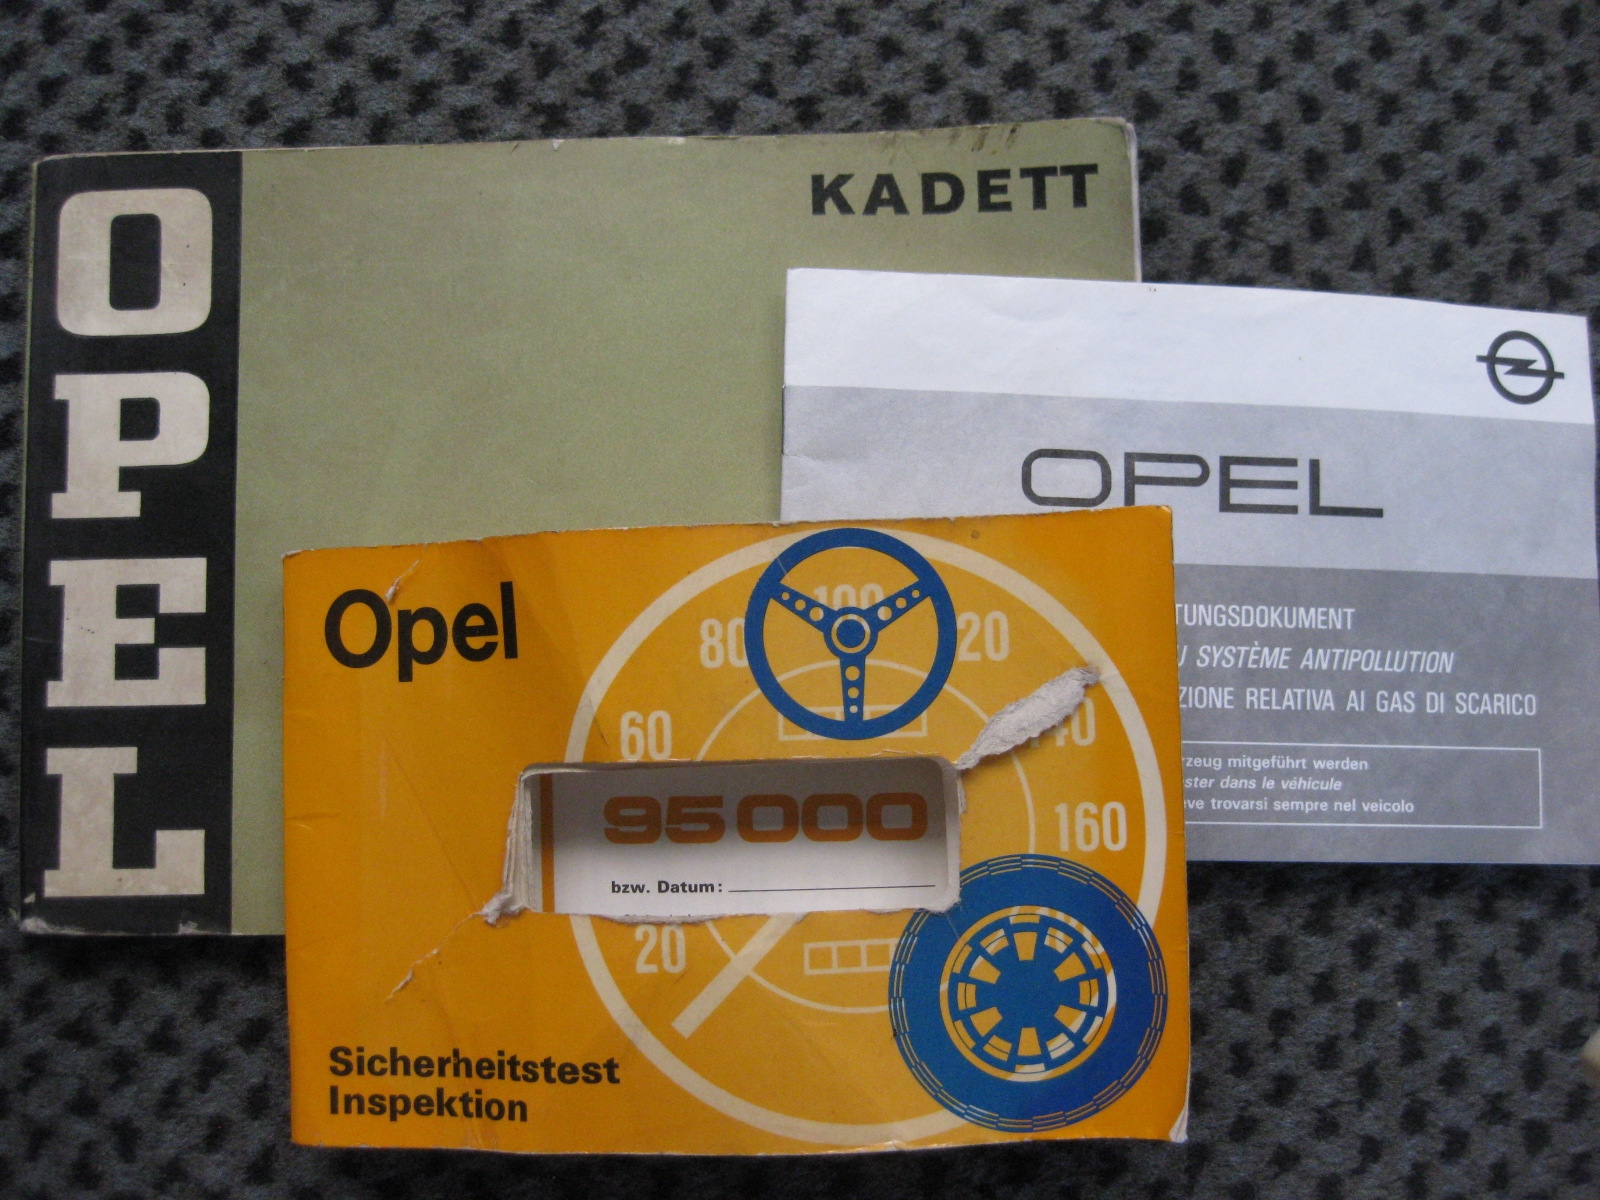 Opel Kadett B Coupé